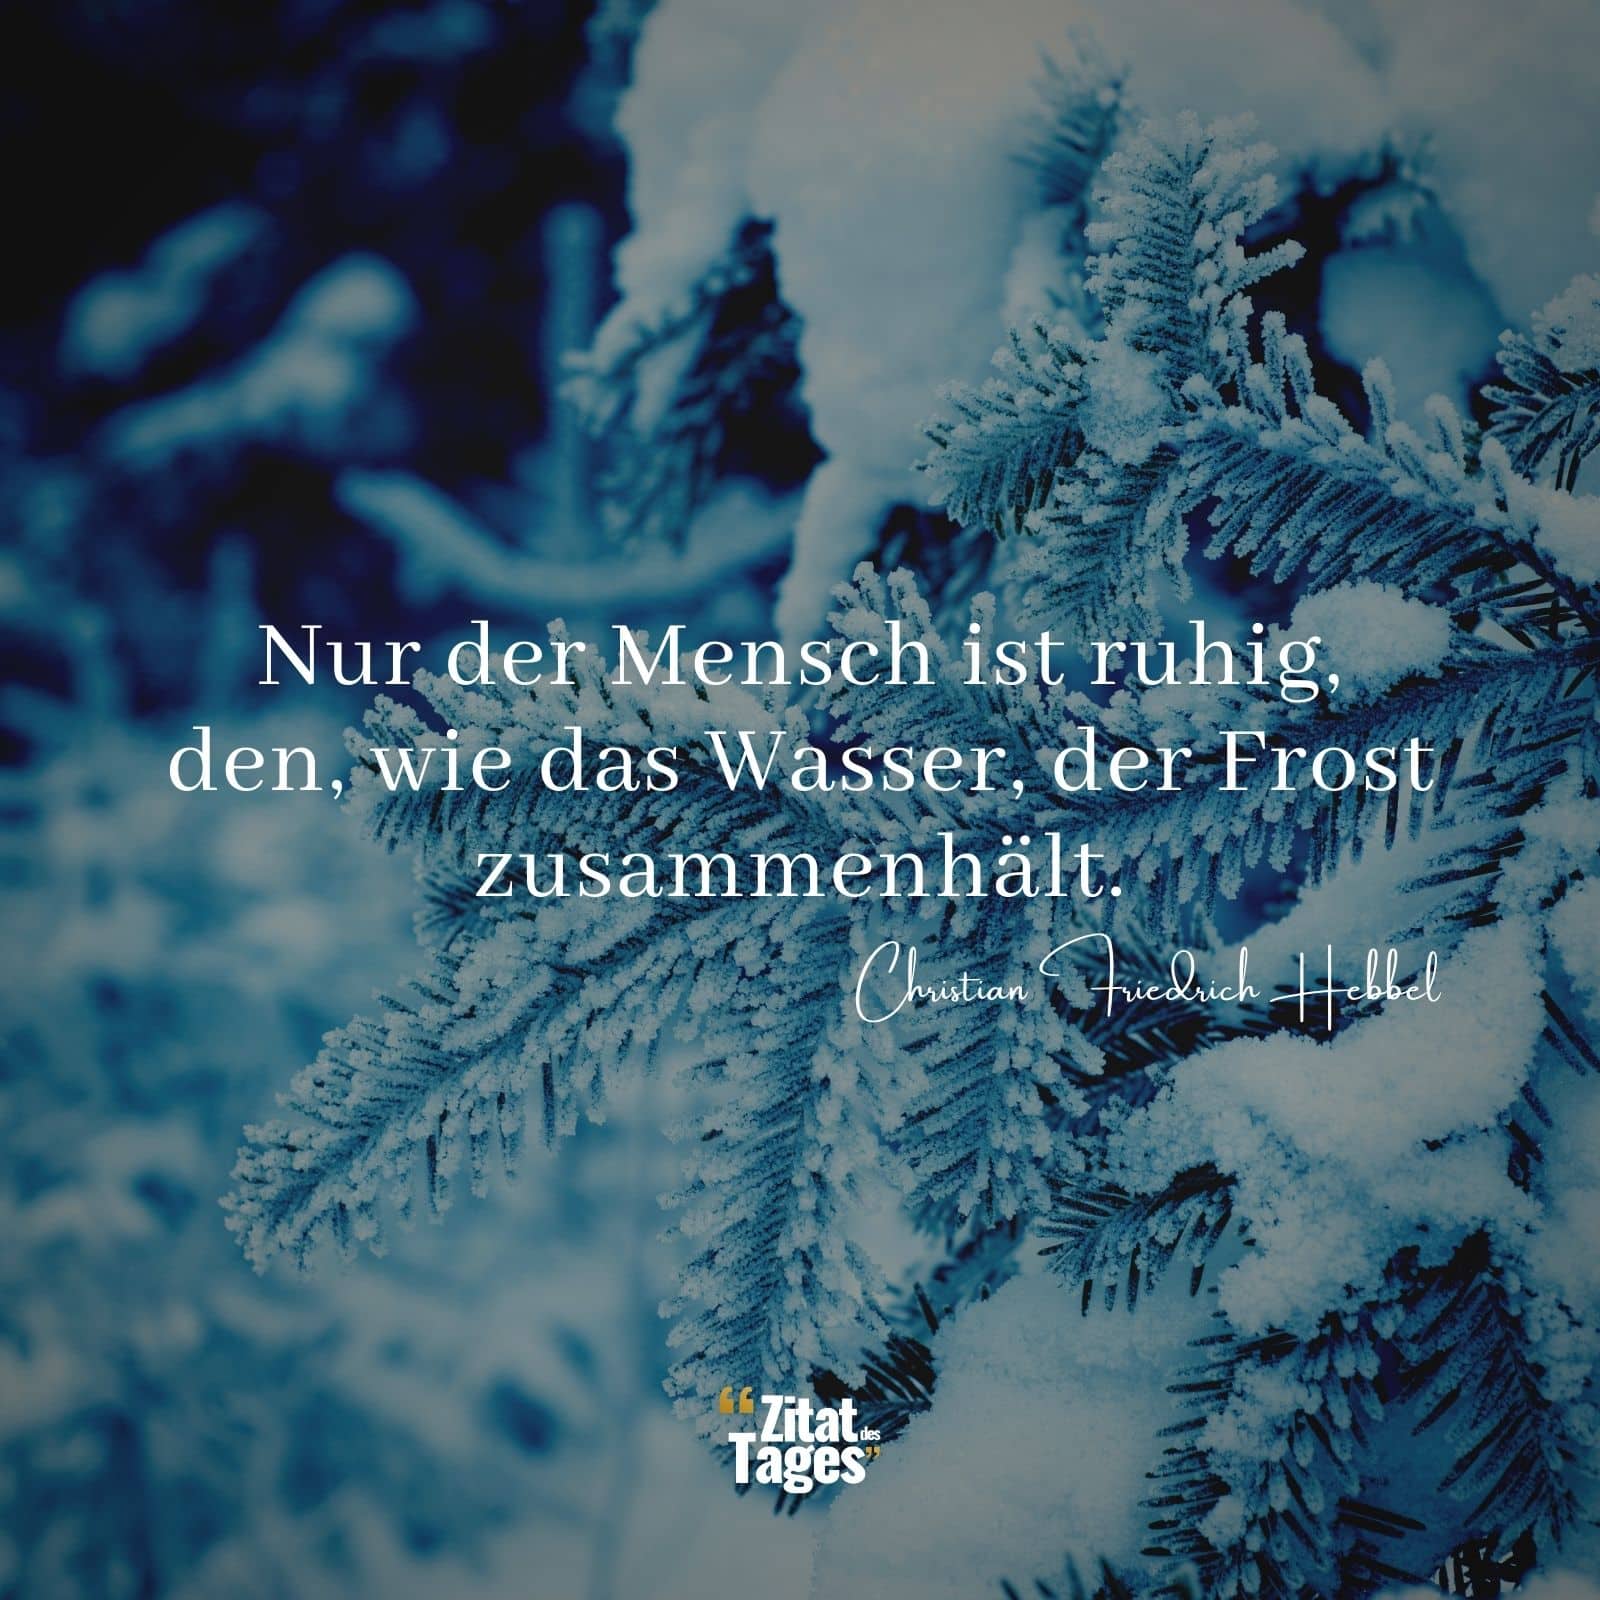 Nur der Mensch ist ruhig, den, wie das Wasser, der Frost zusammenhält. - Christian Friedrich Hebbel